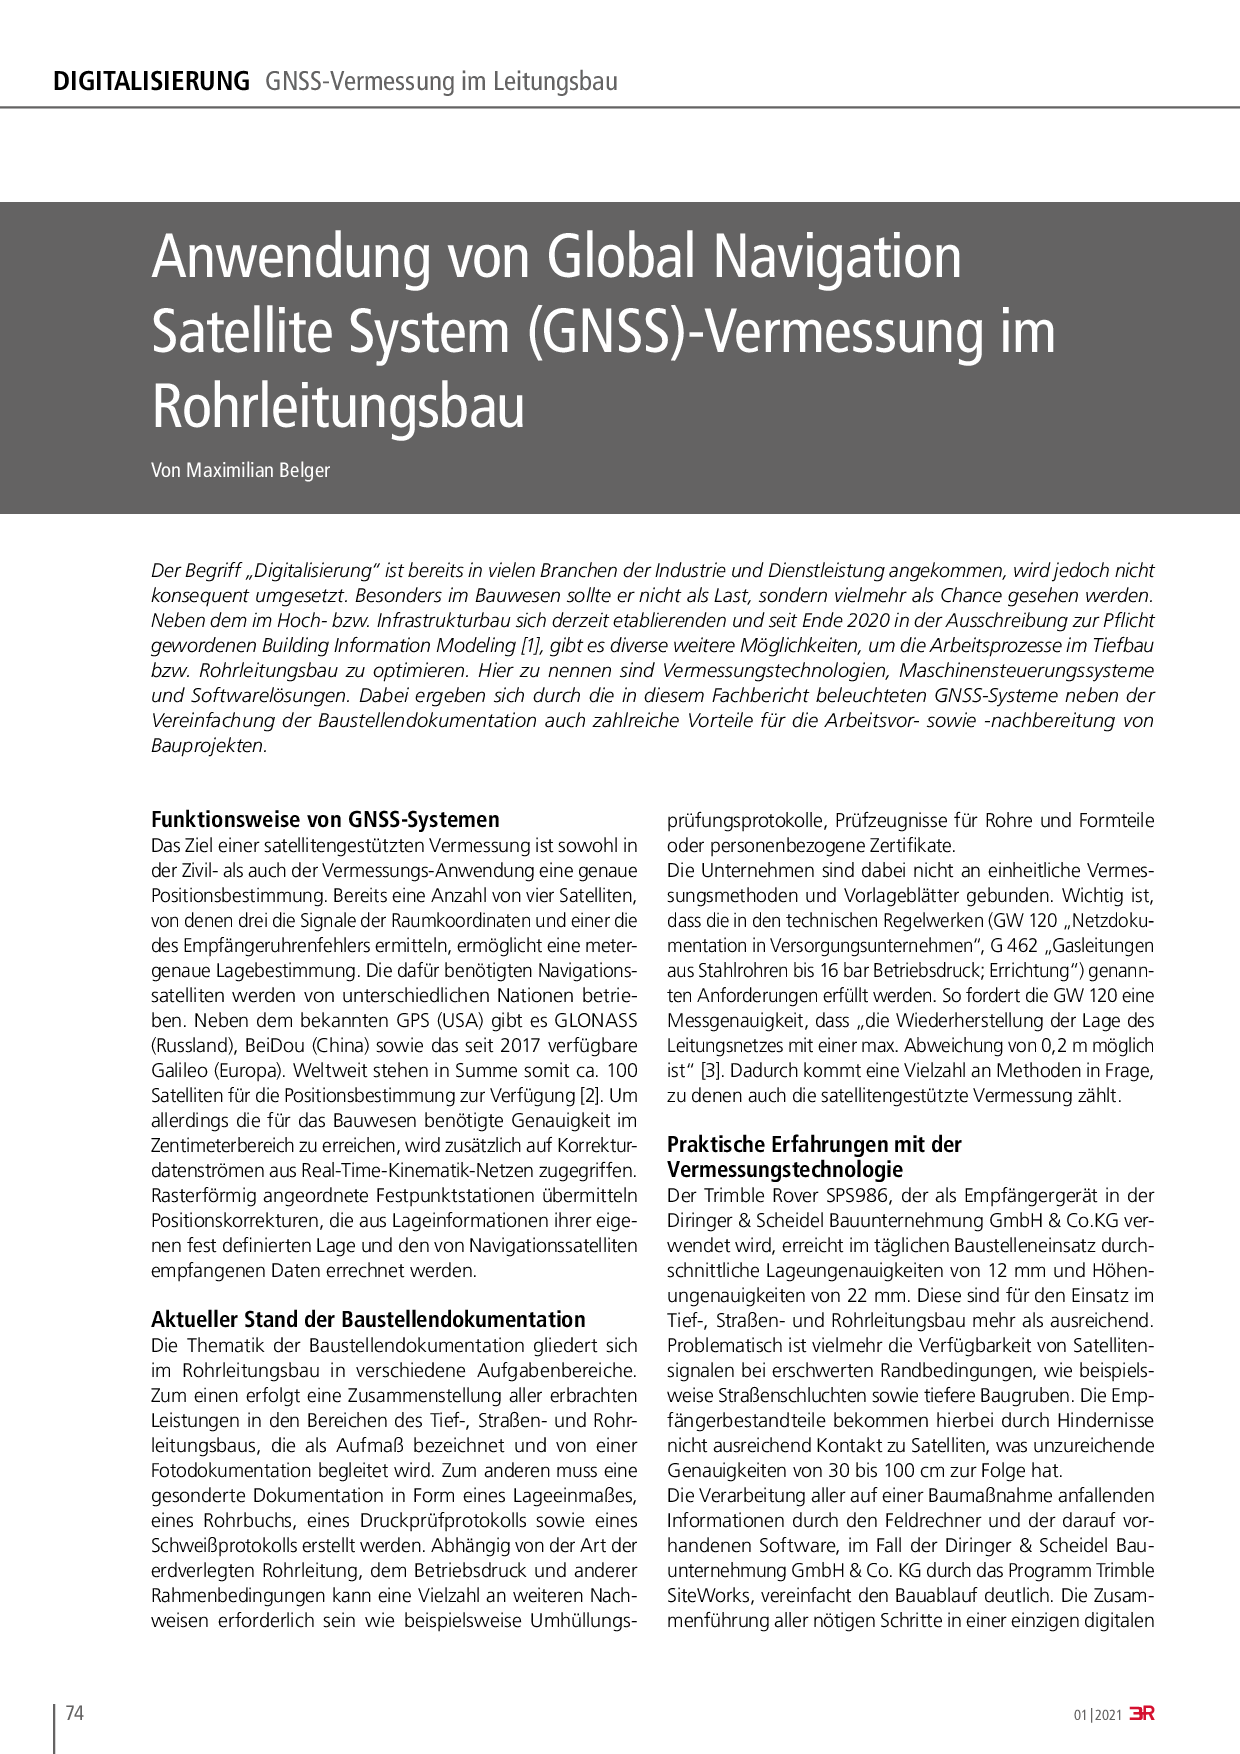 Anwendung von Global Navigation Satellite System (GNSS)-Vermessung im Rohrleitungsbau